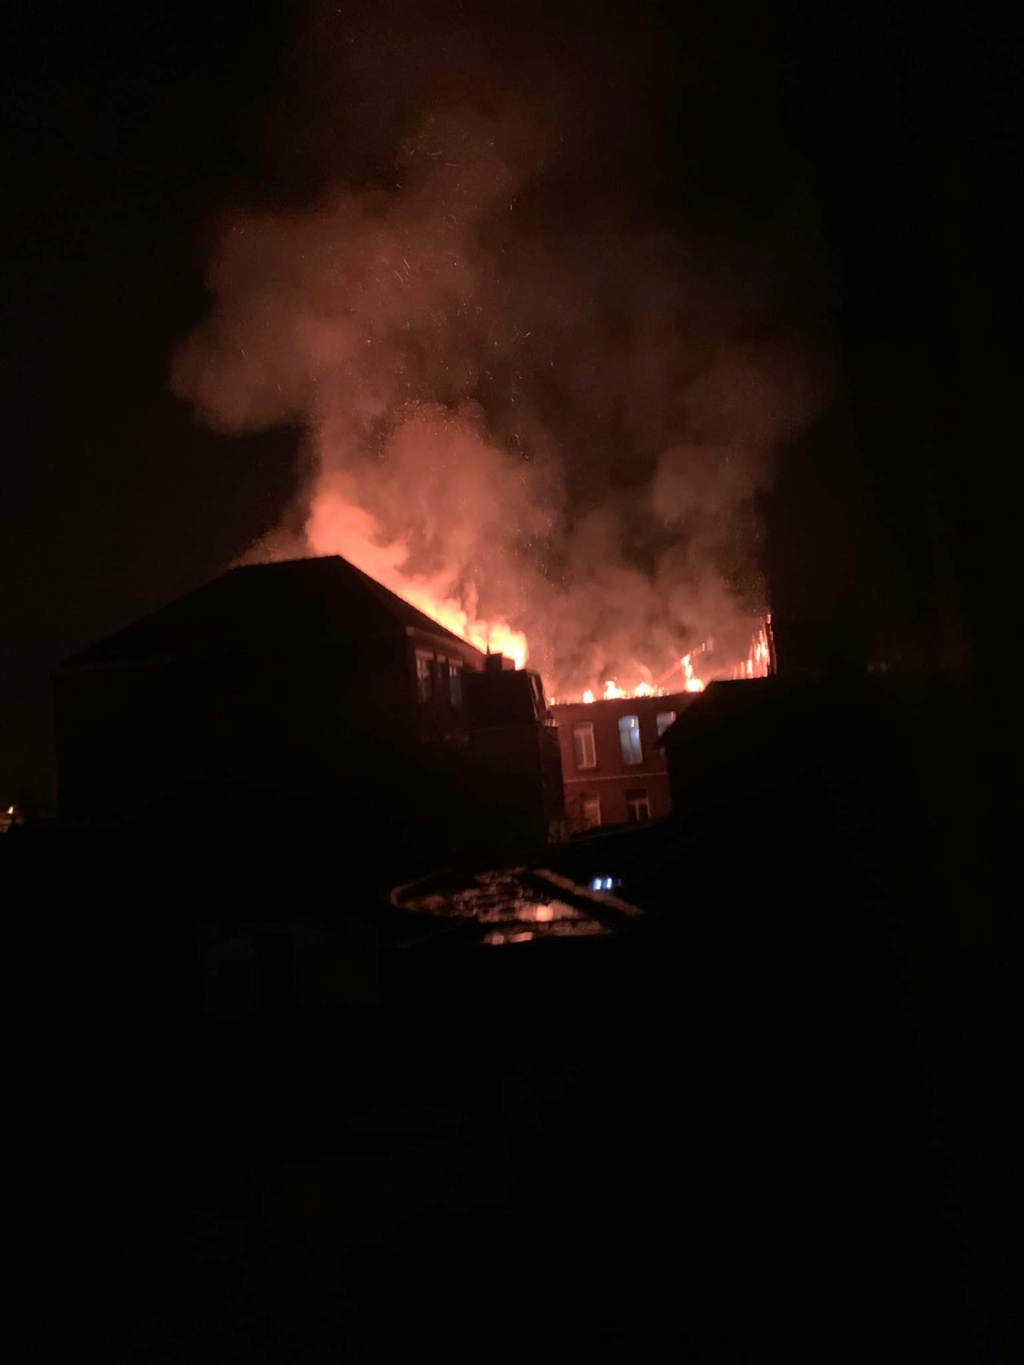 Incendie dans l'école de La Providence à Templeuve (25-11-2021 + photos) 25975310